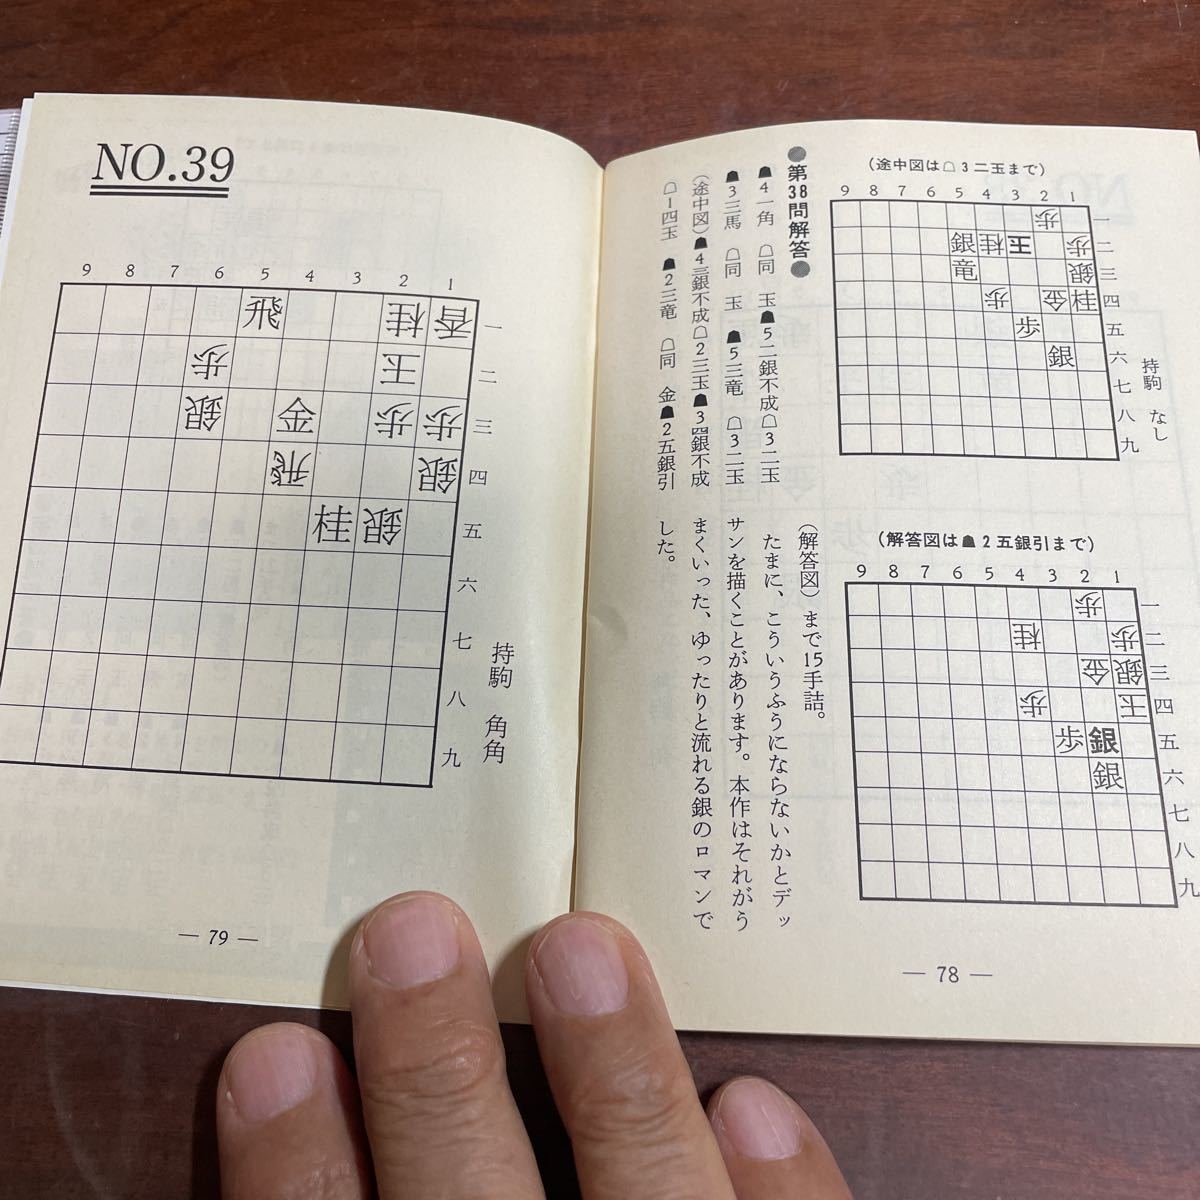 将棋世界付録 詰将棋集 伊藤果のオルゴール 駒が織りなす39題 平成6年 